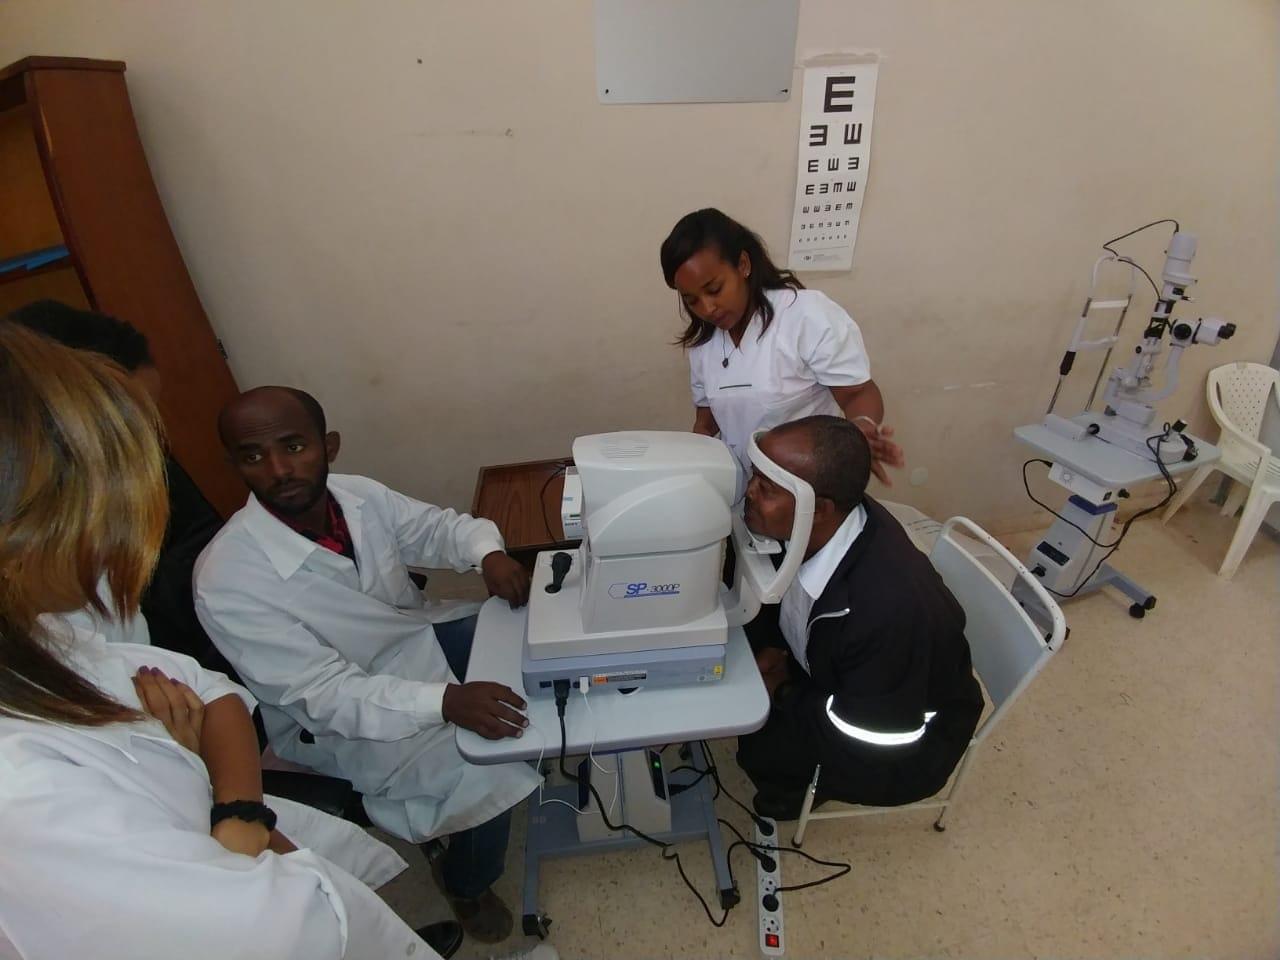   وفد مصري يصل إلى أسمرة لتدريب الأطباء الإريتريين على أجهزة مهداة من وكالة الشراكة